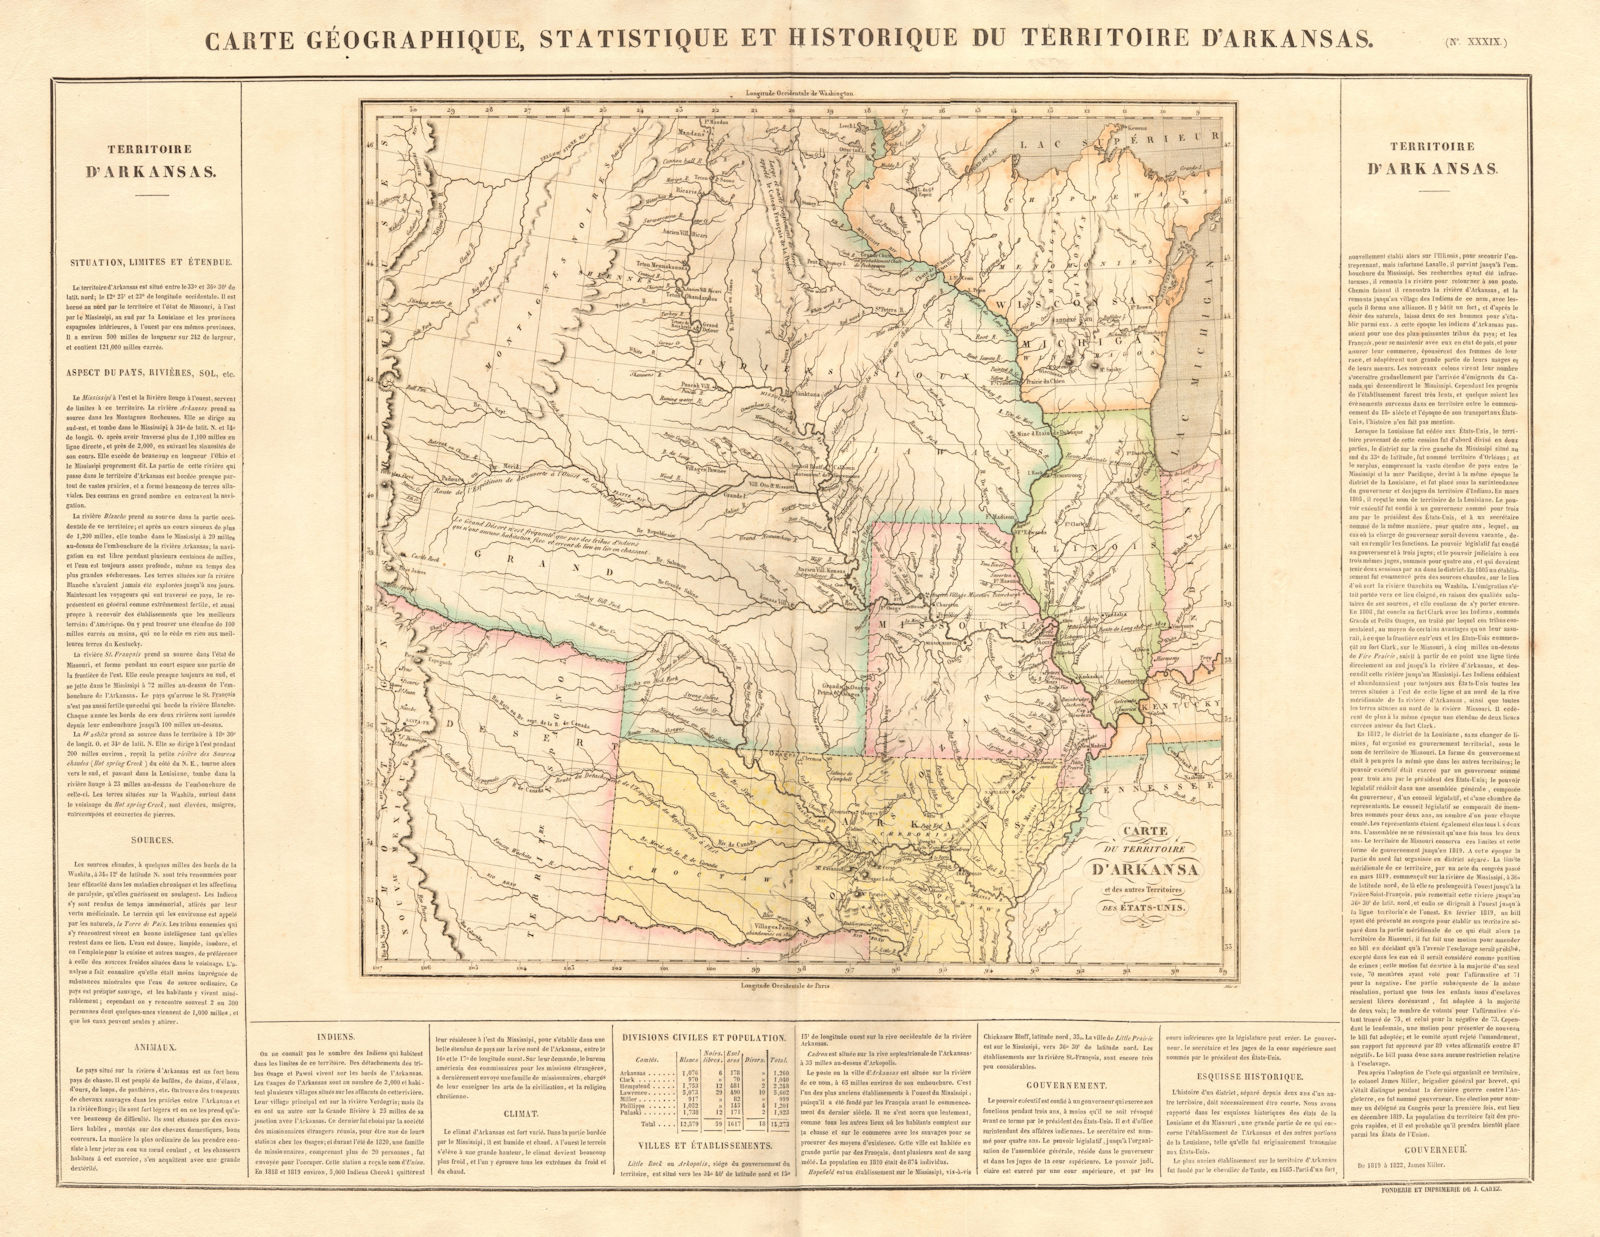 'Territoire d'Arkansas'. US Midwest/Gt Plains. Explorers routes. BUCHON 1825 map